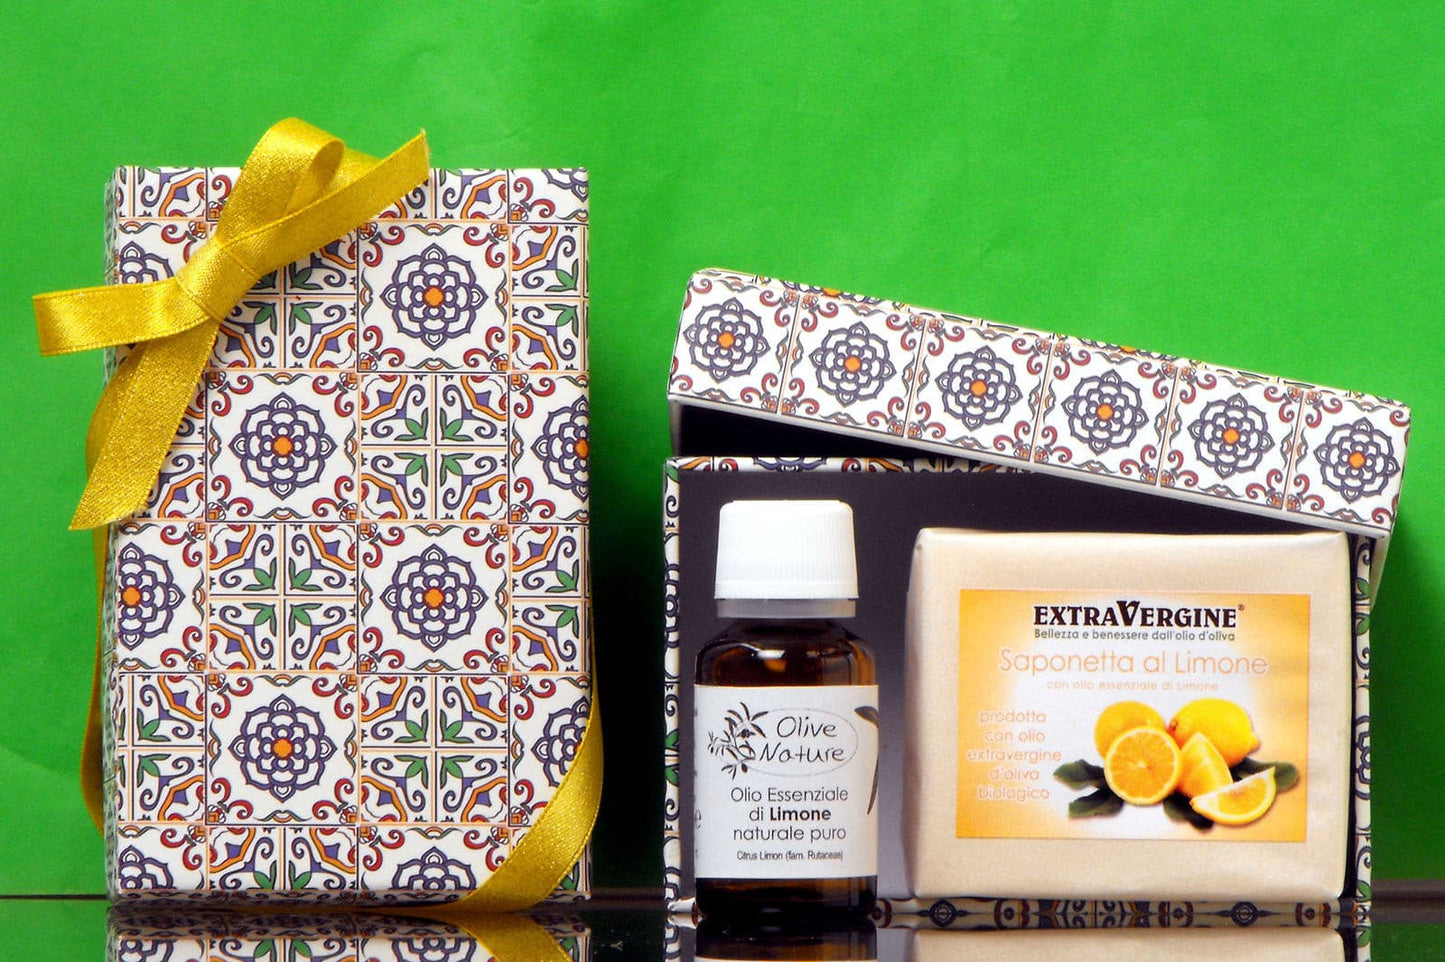 Scatolina di cartone decorata con motivo stile maiolica contenente un O.E. di Limone da 15 ml e una saponetta con O.E. di Limone da 100 grammi - Extravergine